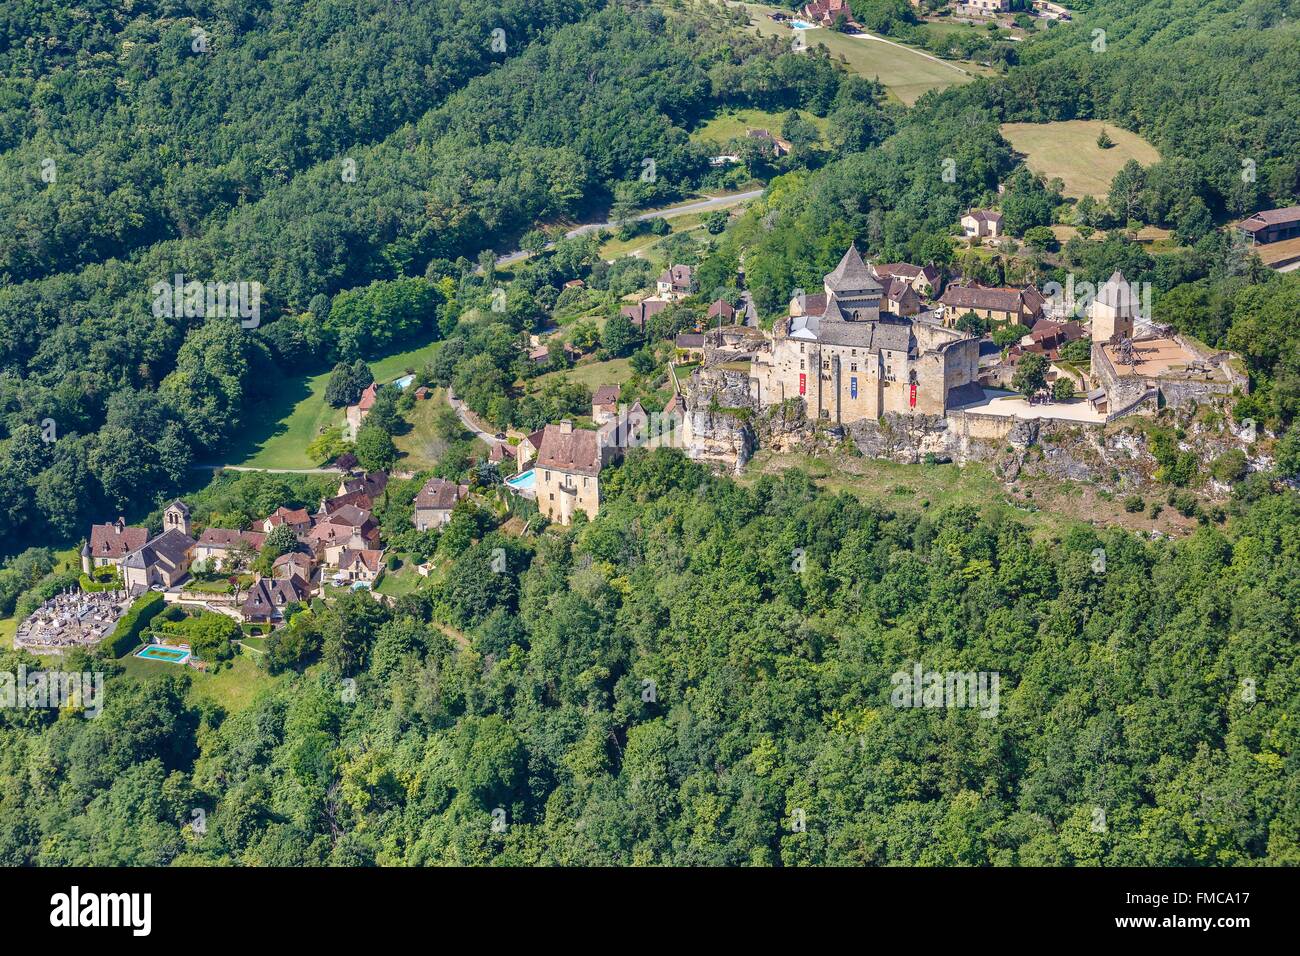 France, Dordogne, Castelnaud la Chapelle, labelled Les Plus Beaux Villages de France (The Most Beautiful Villages of France), Stock Photo